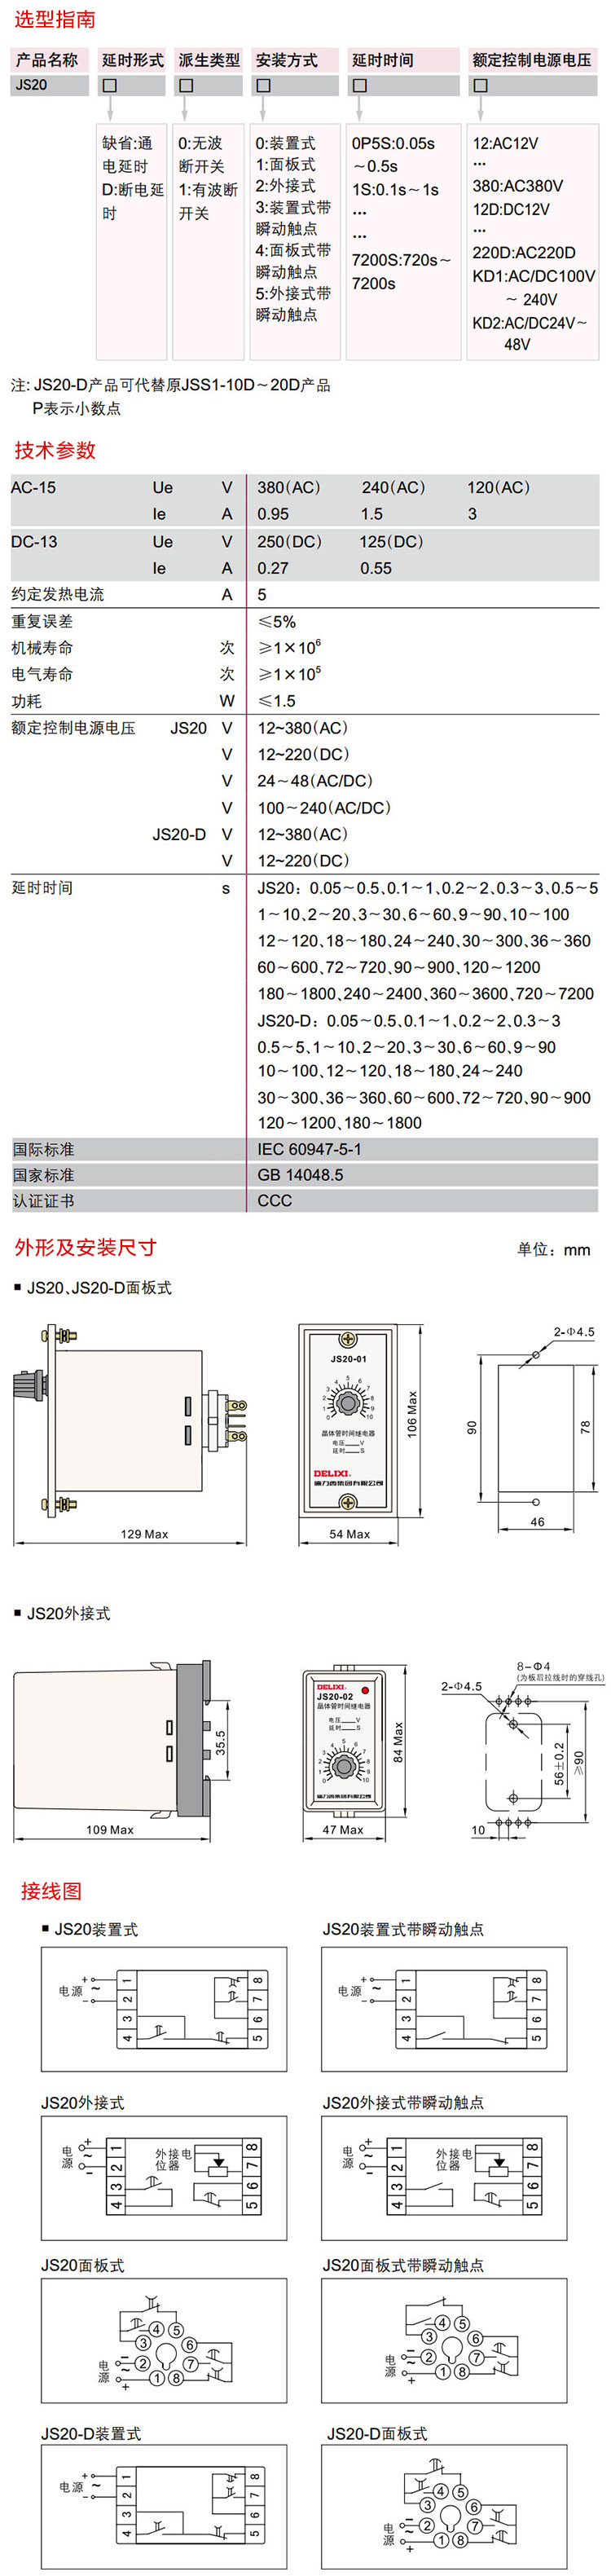 德力西晶体管时间继电器 JS20晶体管时间继电器 选型手册 产品尺寸 产品参数 接线图